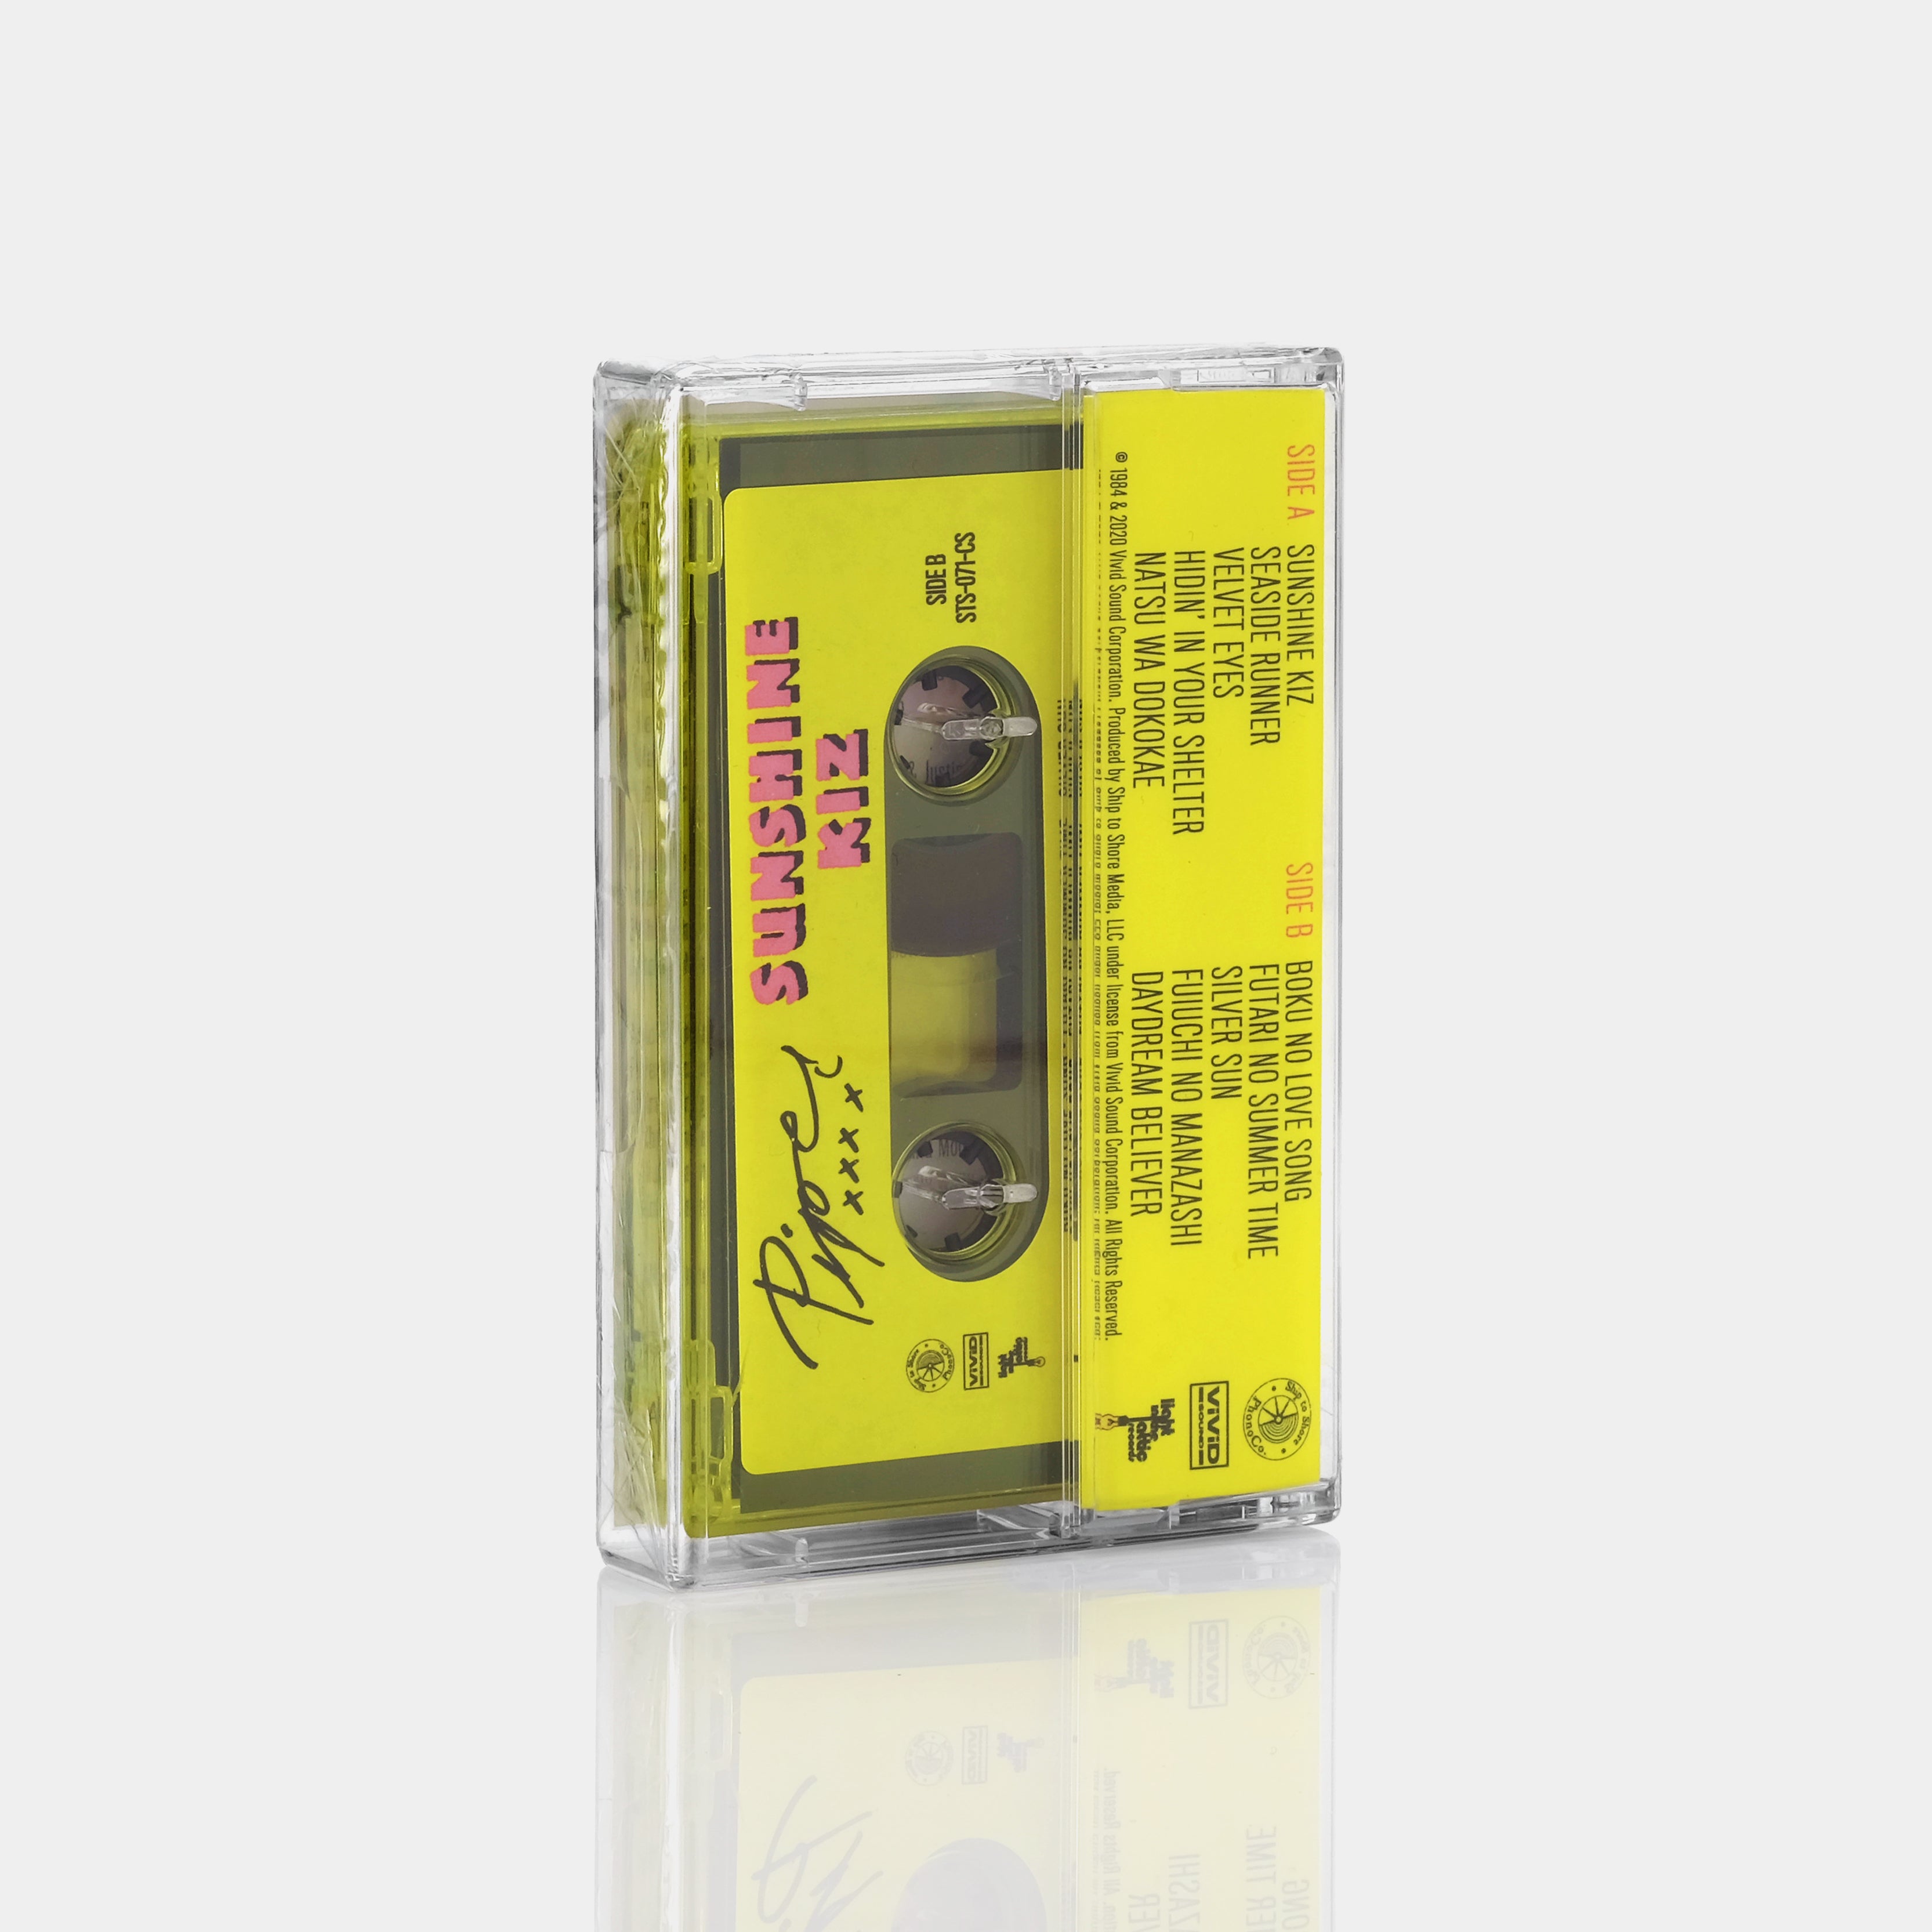 Piper - Sunshine Kiz Cassette Tape